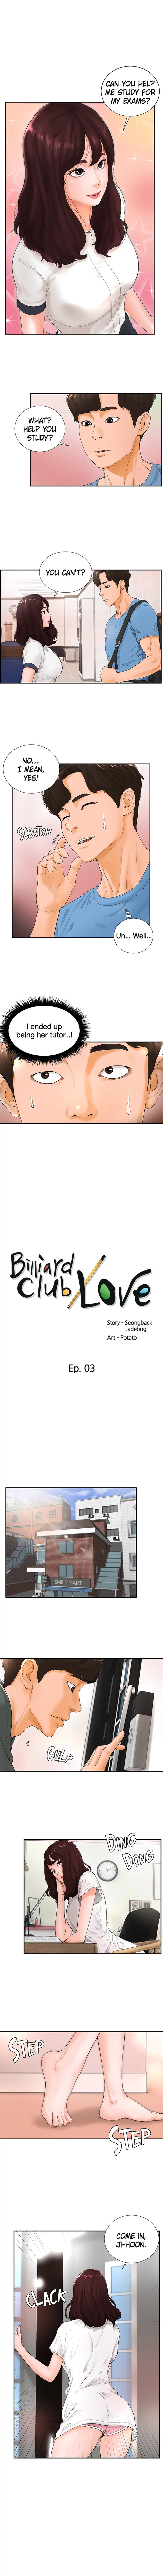 billiard-club-love-chap-3-0